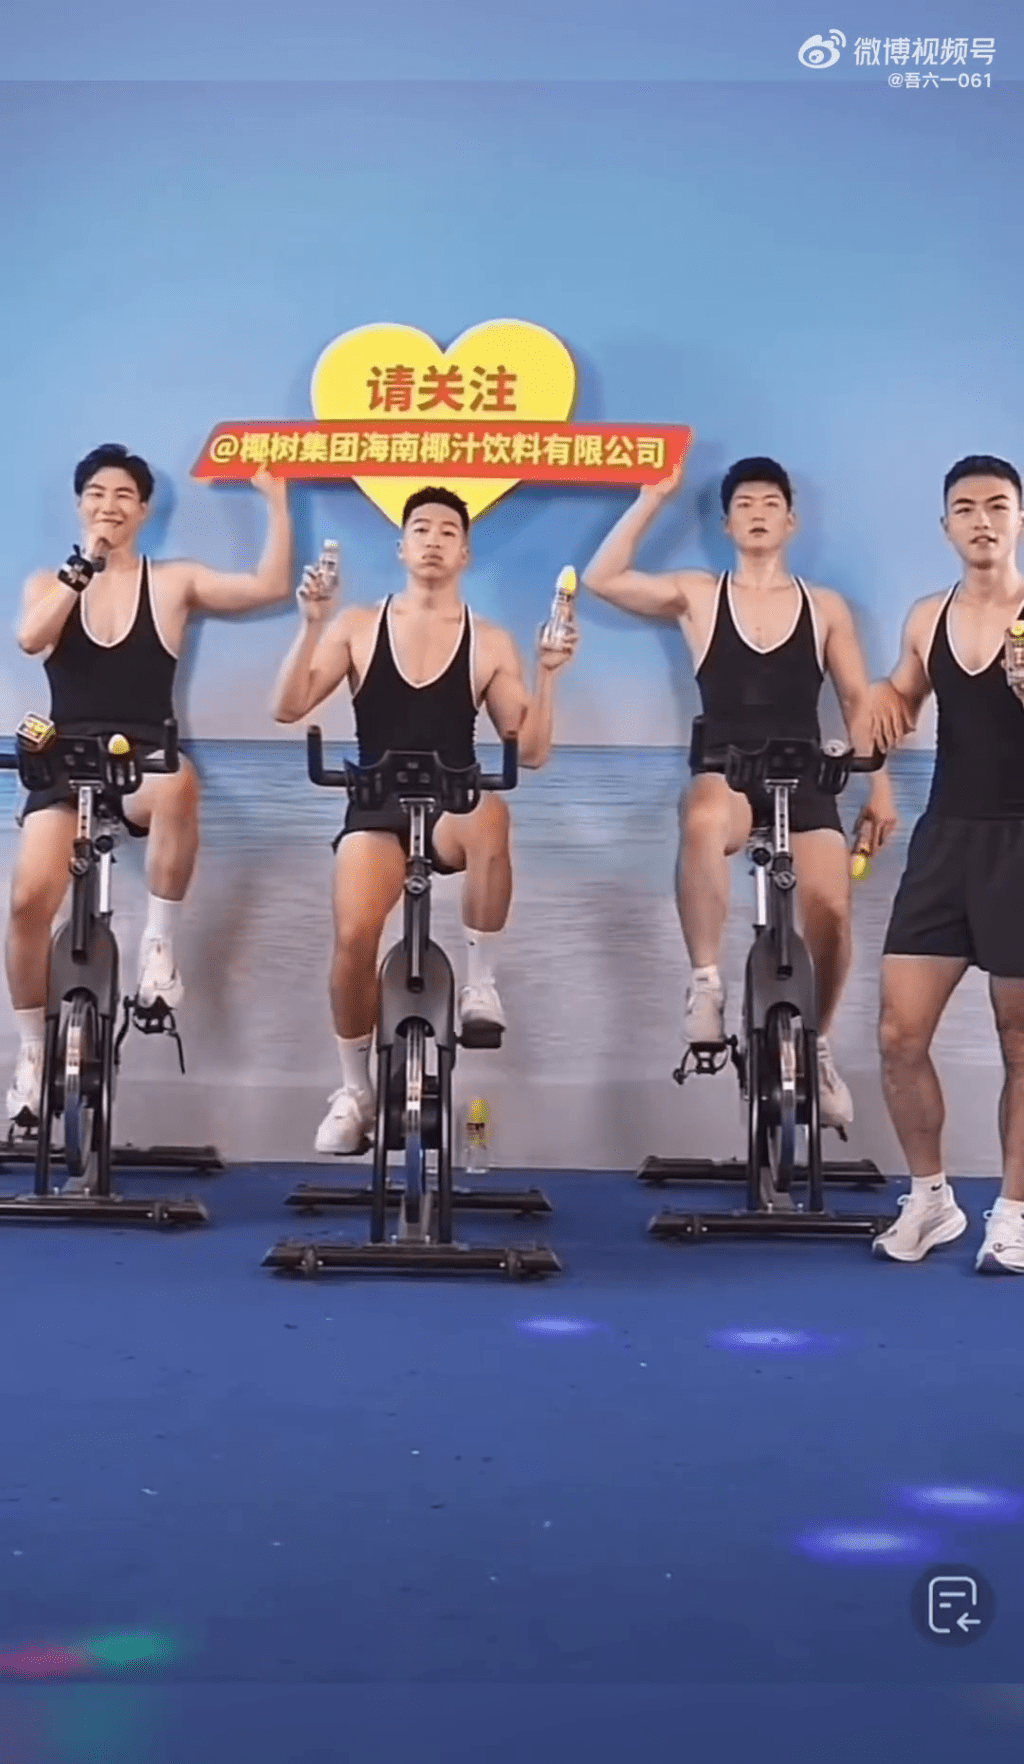 四位猛男还在健身单车上宣传。